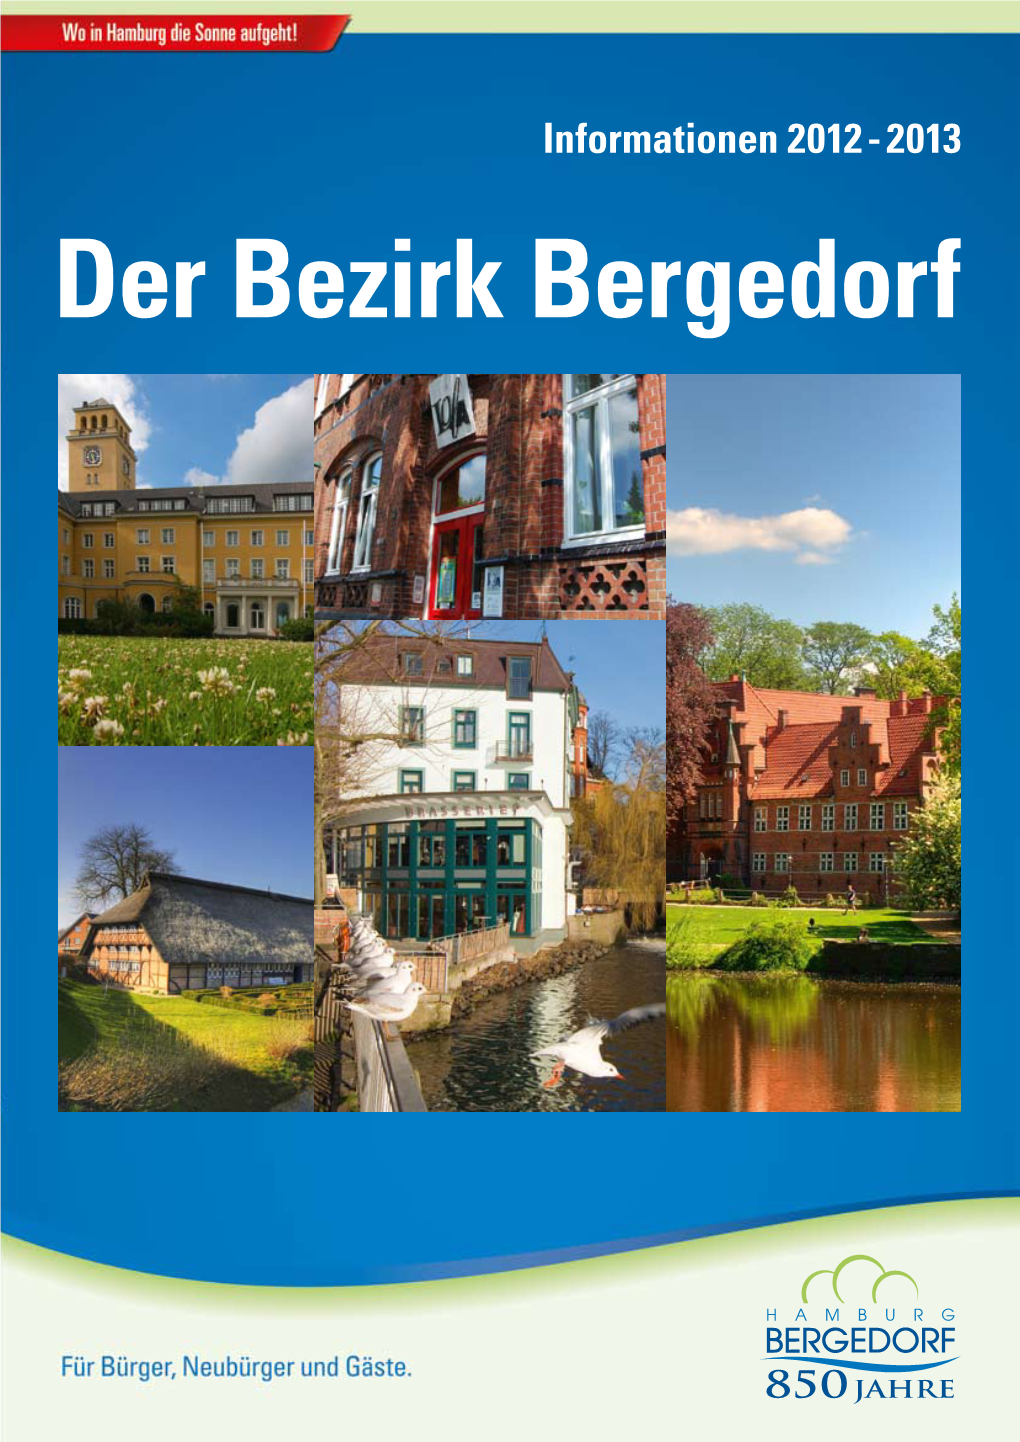 Der Bezirk Bergedorf